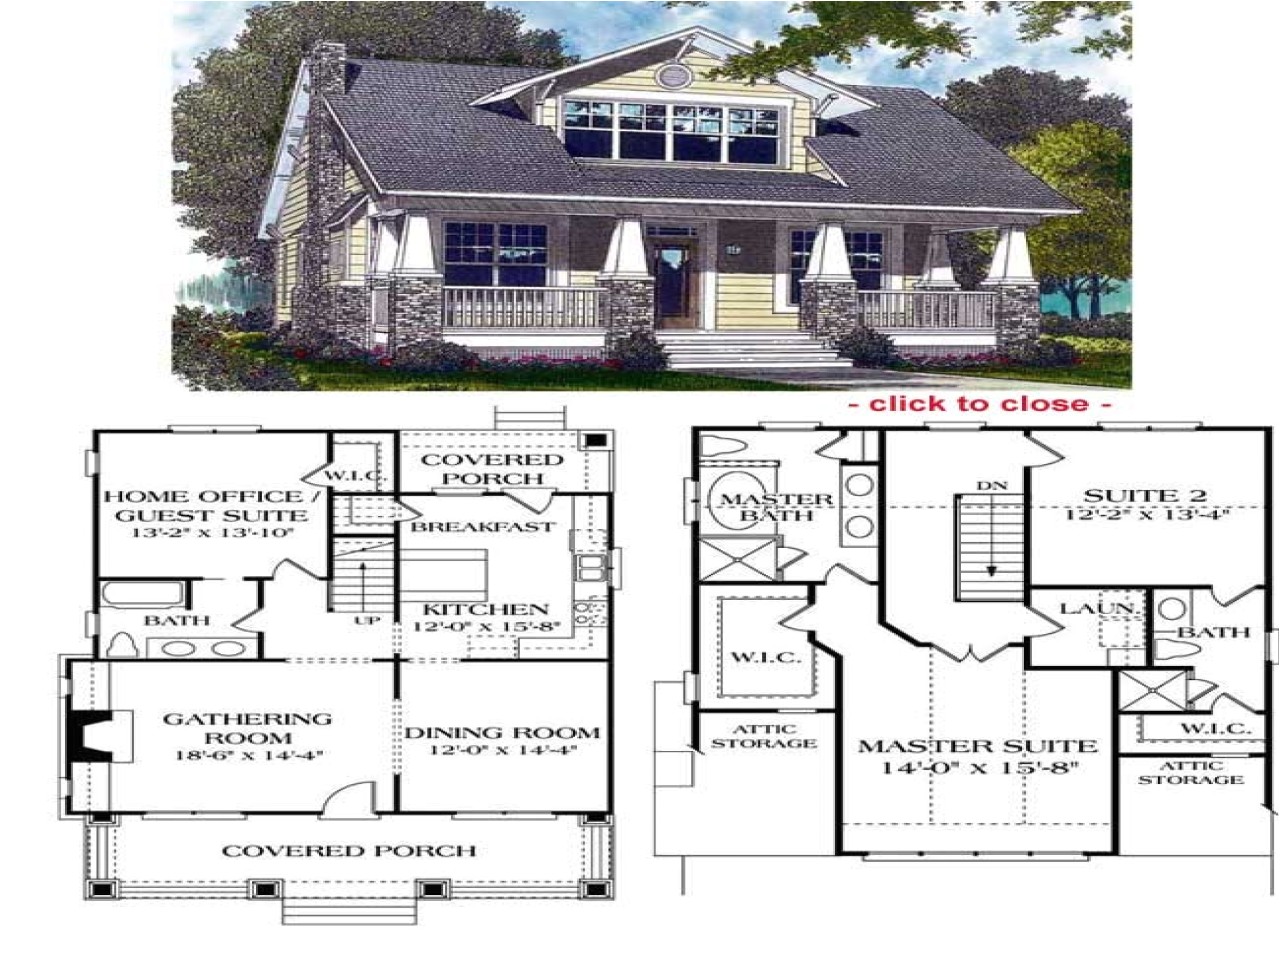 c07efc46633f0ae0 bungalow style house plans bungalow house floor plans